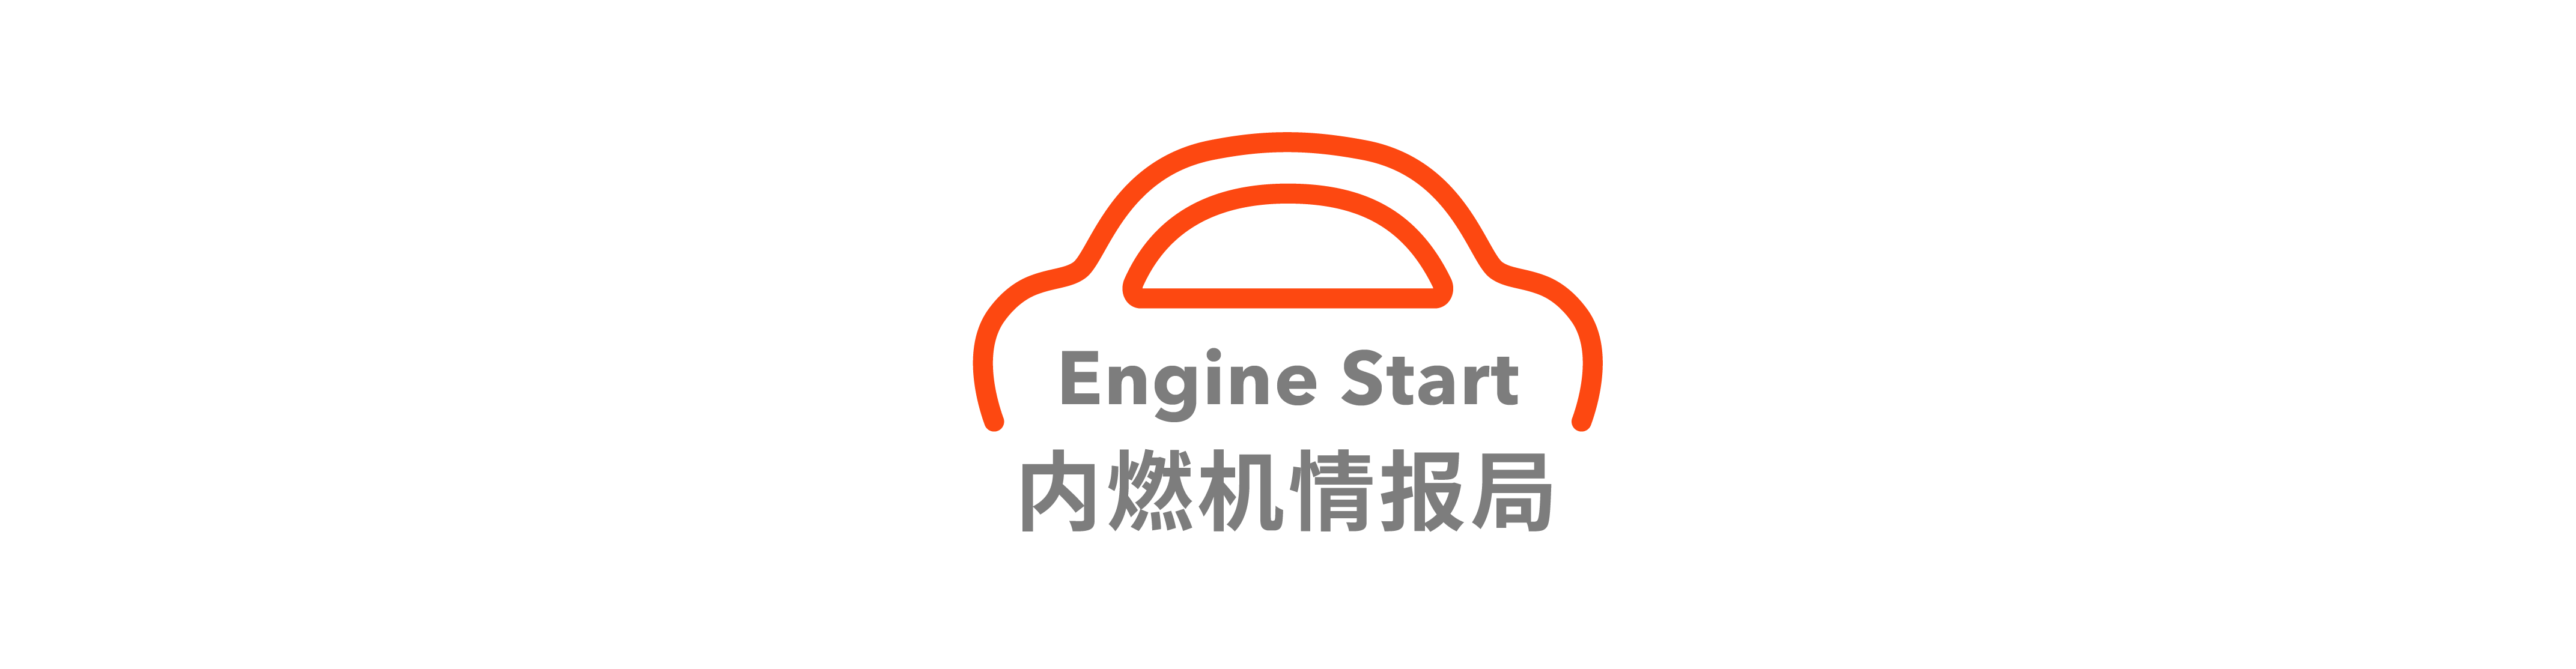 22 - Dong Che Daily｜ Le auto Tesla supportano Apple Music / Annunciata la nuova mappa della dichiarazione Weilai ES6 / Subaru BRZ sarà interrotto a marzo